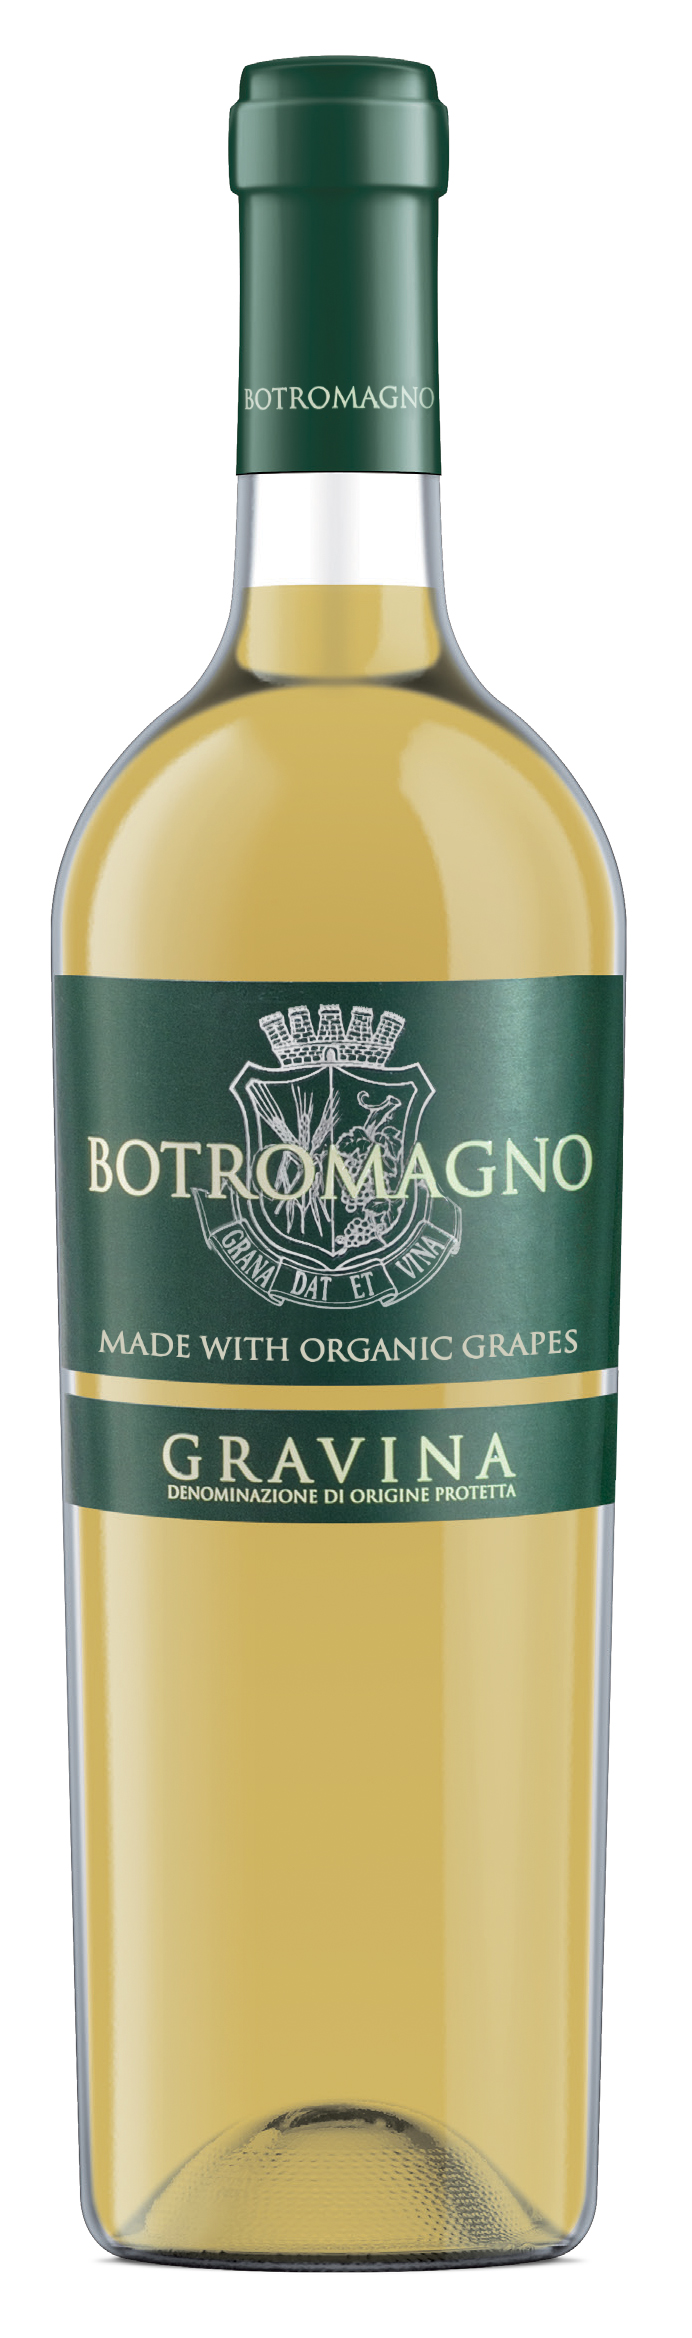 Botromagno Gravina Organic 2019 750ml